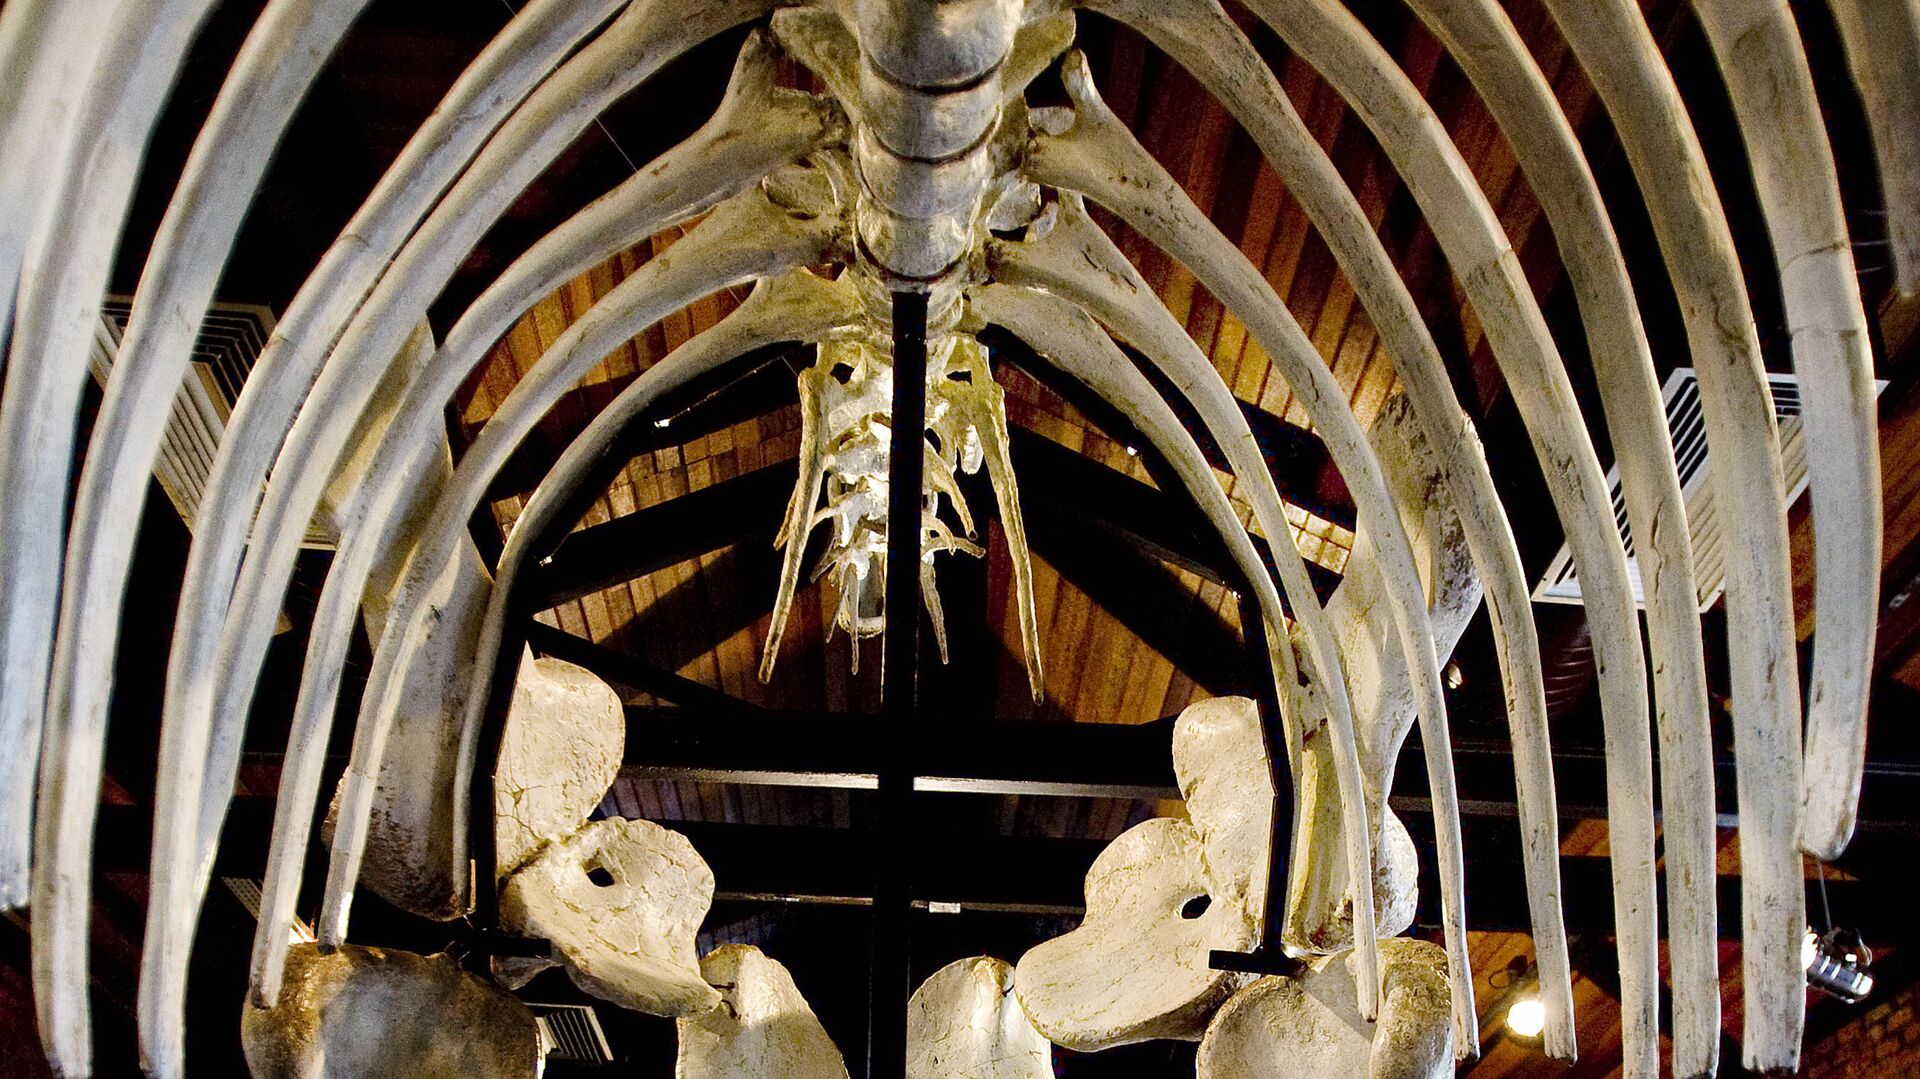 Los huesos de un dinosaurio en un museo brasileño - Sputnik Mundo, 1920, 01.12.2021